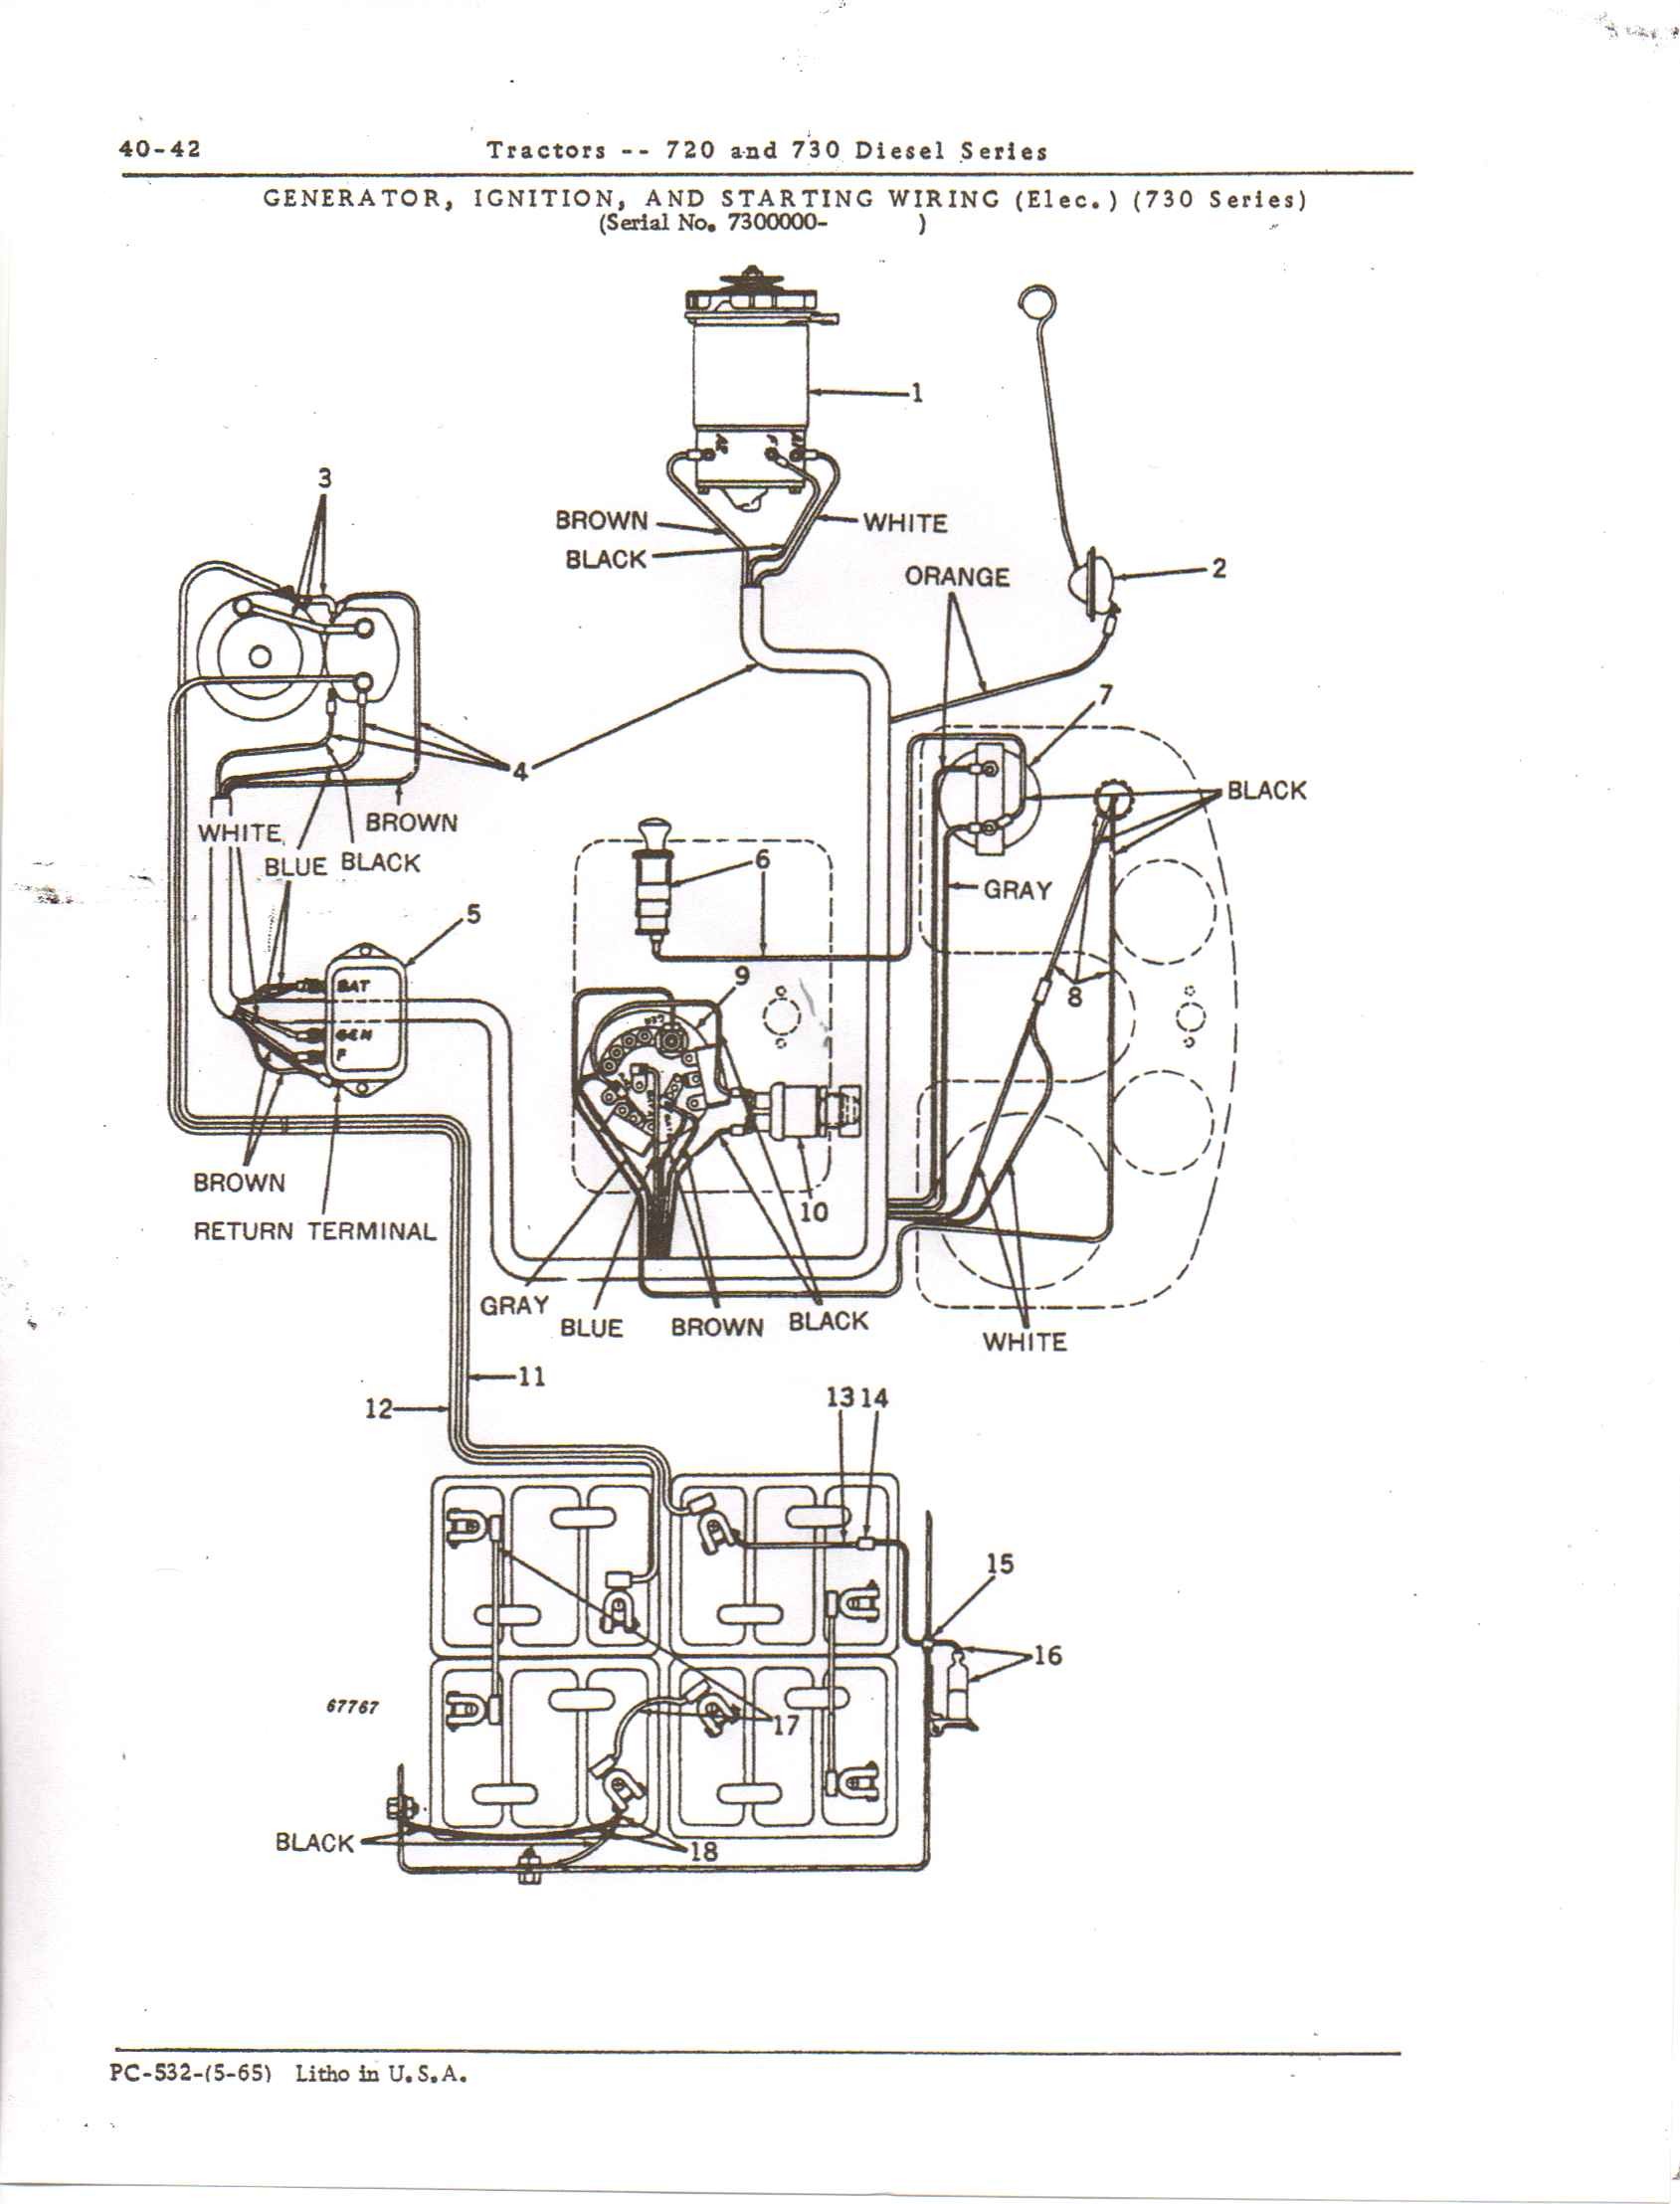 John Deere Wiring Diagrams Luxury Engine Wiring Tractor Diesel John Deere Wiring Diagram Weekend